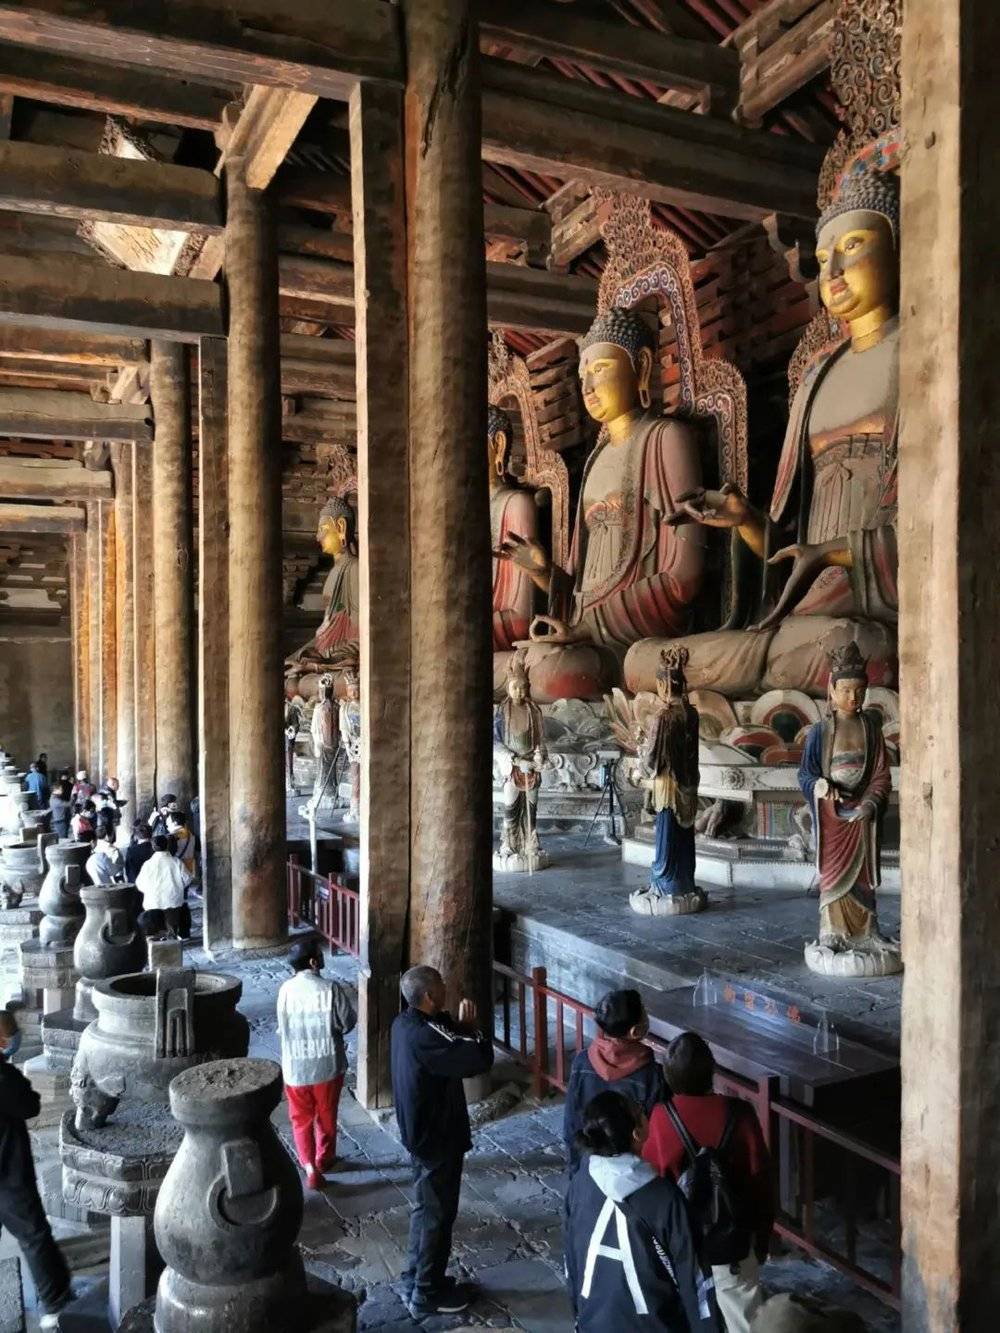 奉国寺大殿内，七尊九米高的辽代佛像一字排开，气势恢宏，是国内最大的寺观彩塑群